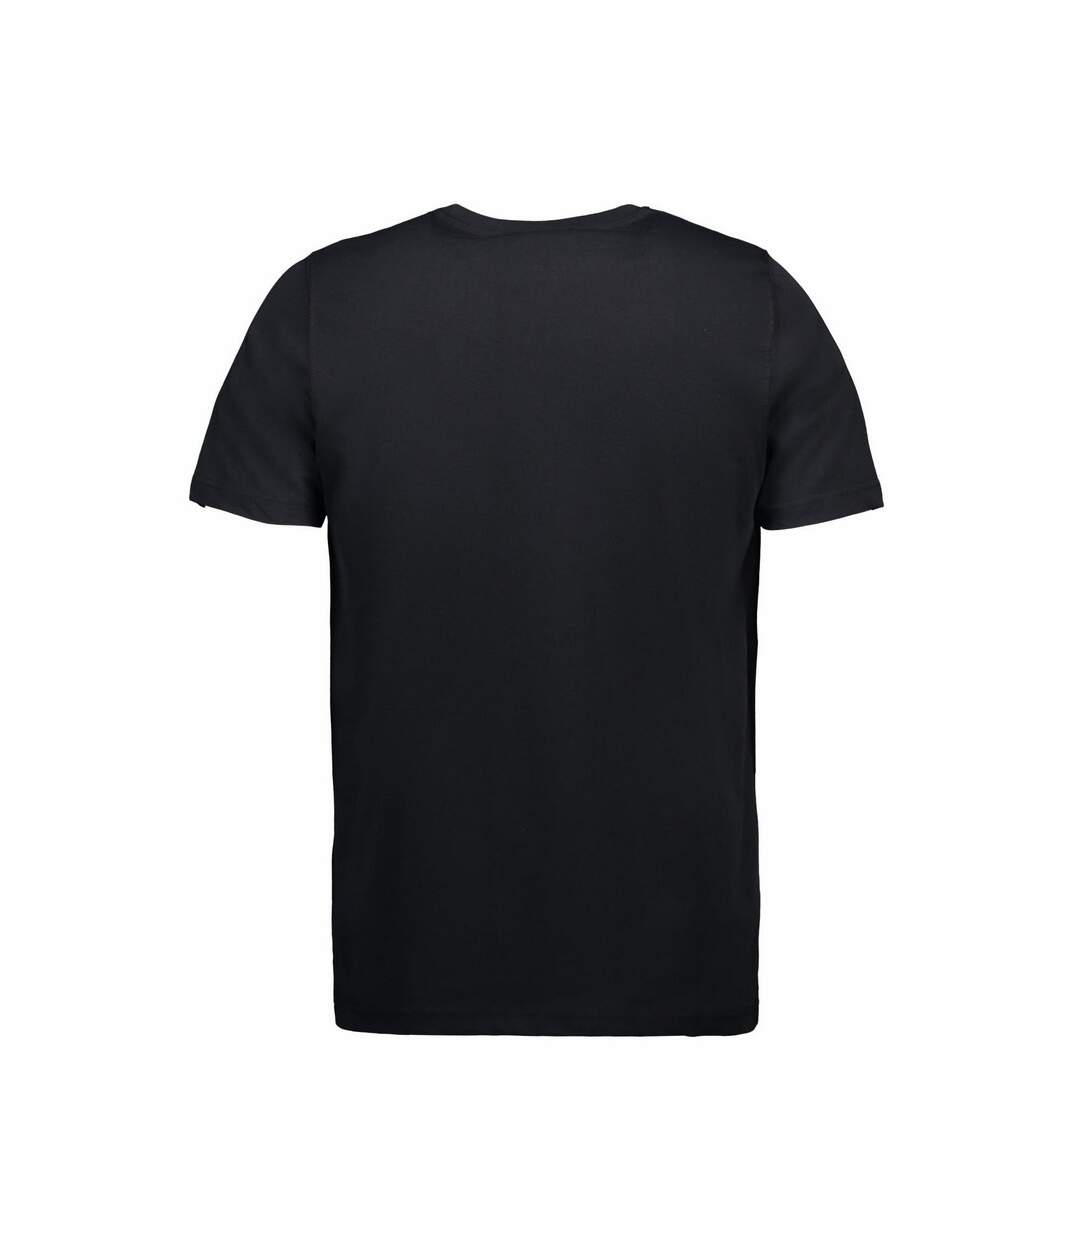 ID - T-shirt uni (coupe ajustée) - Homme (Noir) - UTID267